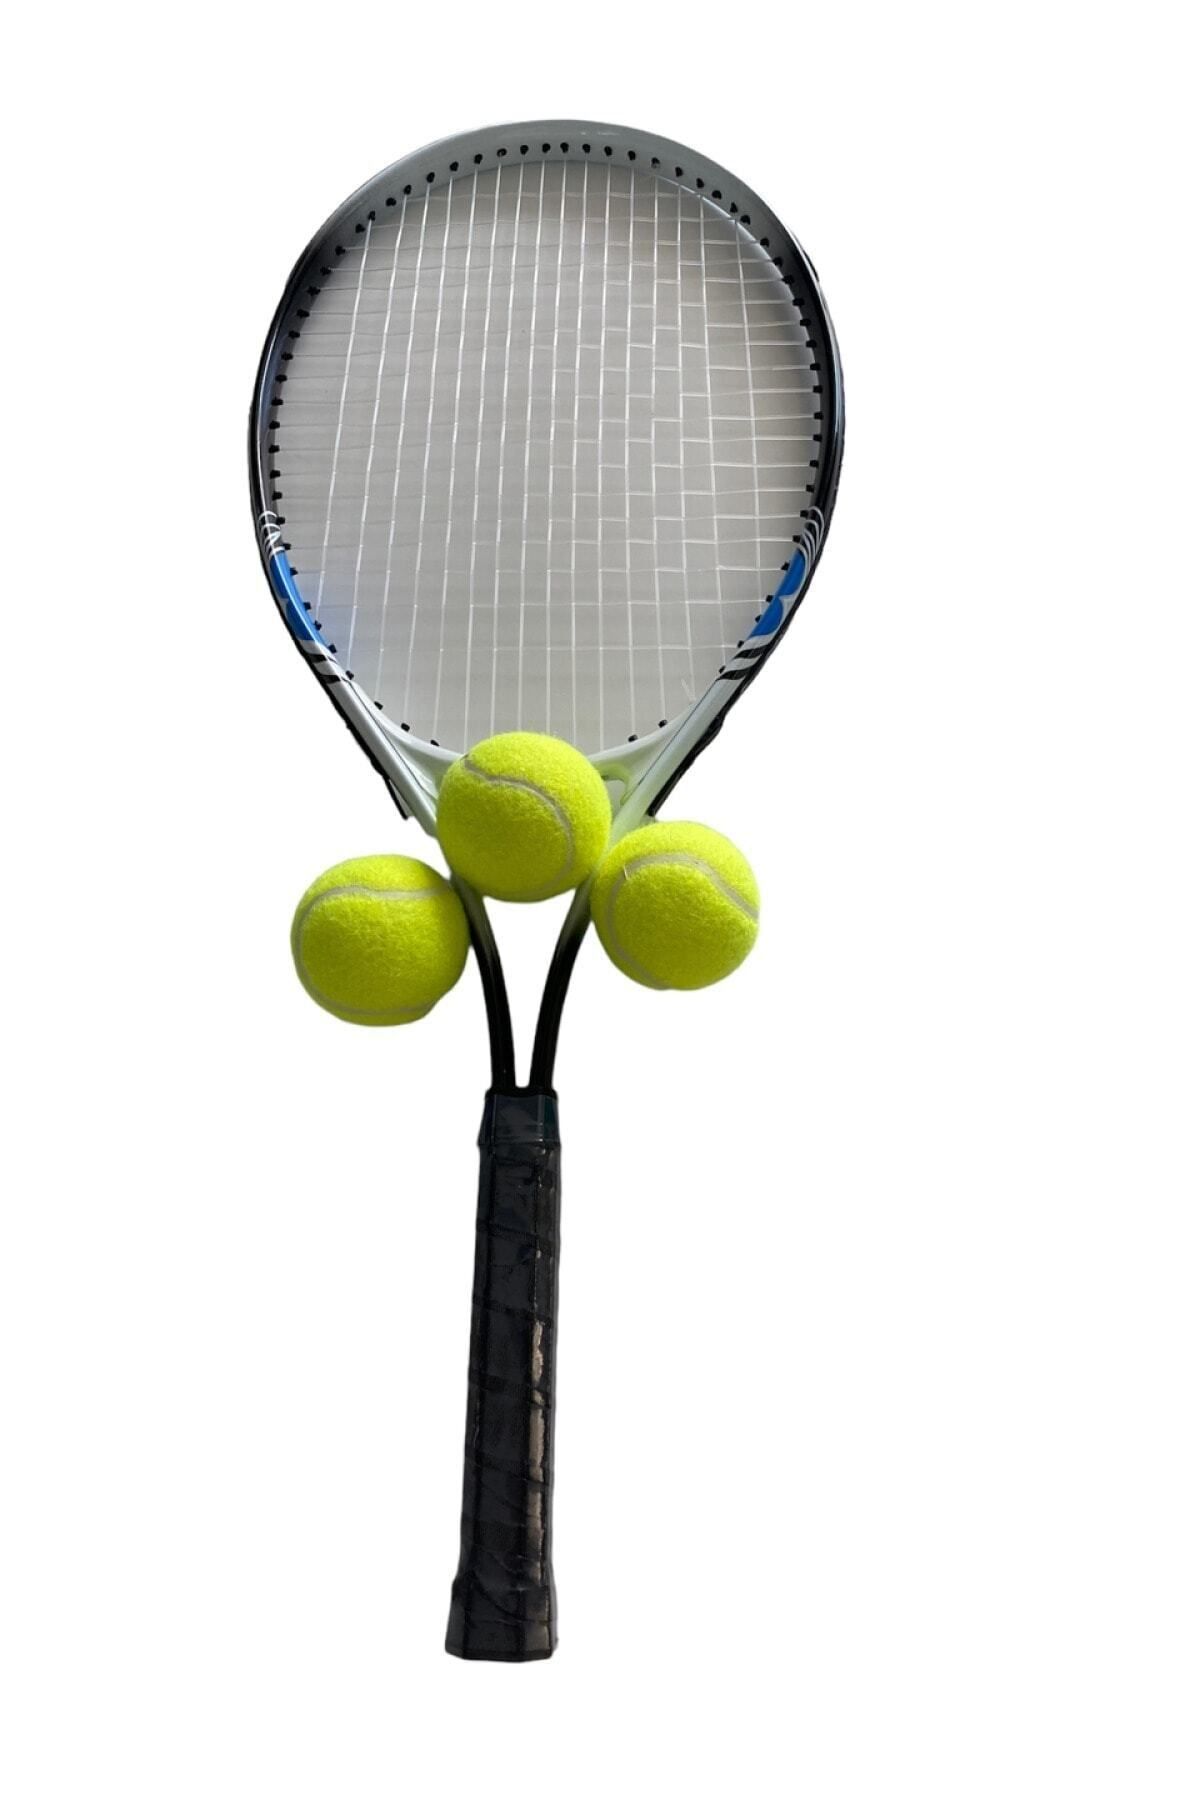 Muba Yetişkin Kort Tenis Raketi Seti Başlangıç Seviye Tenis Raketi Seti Taşıma Çantası Kırmızı